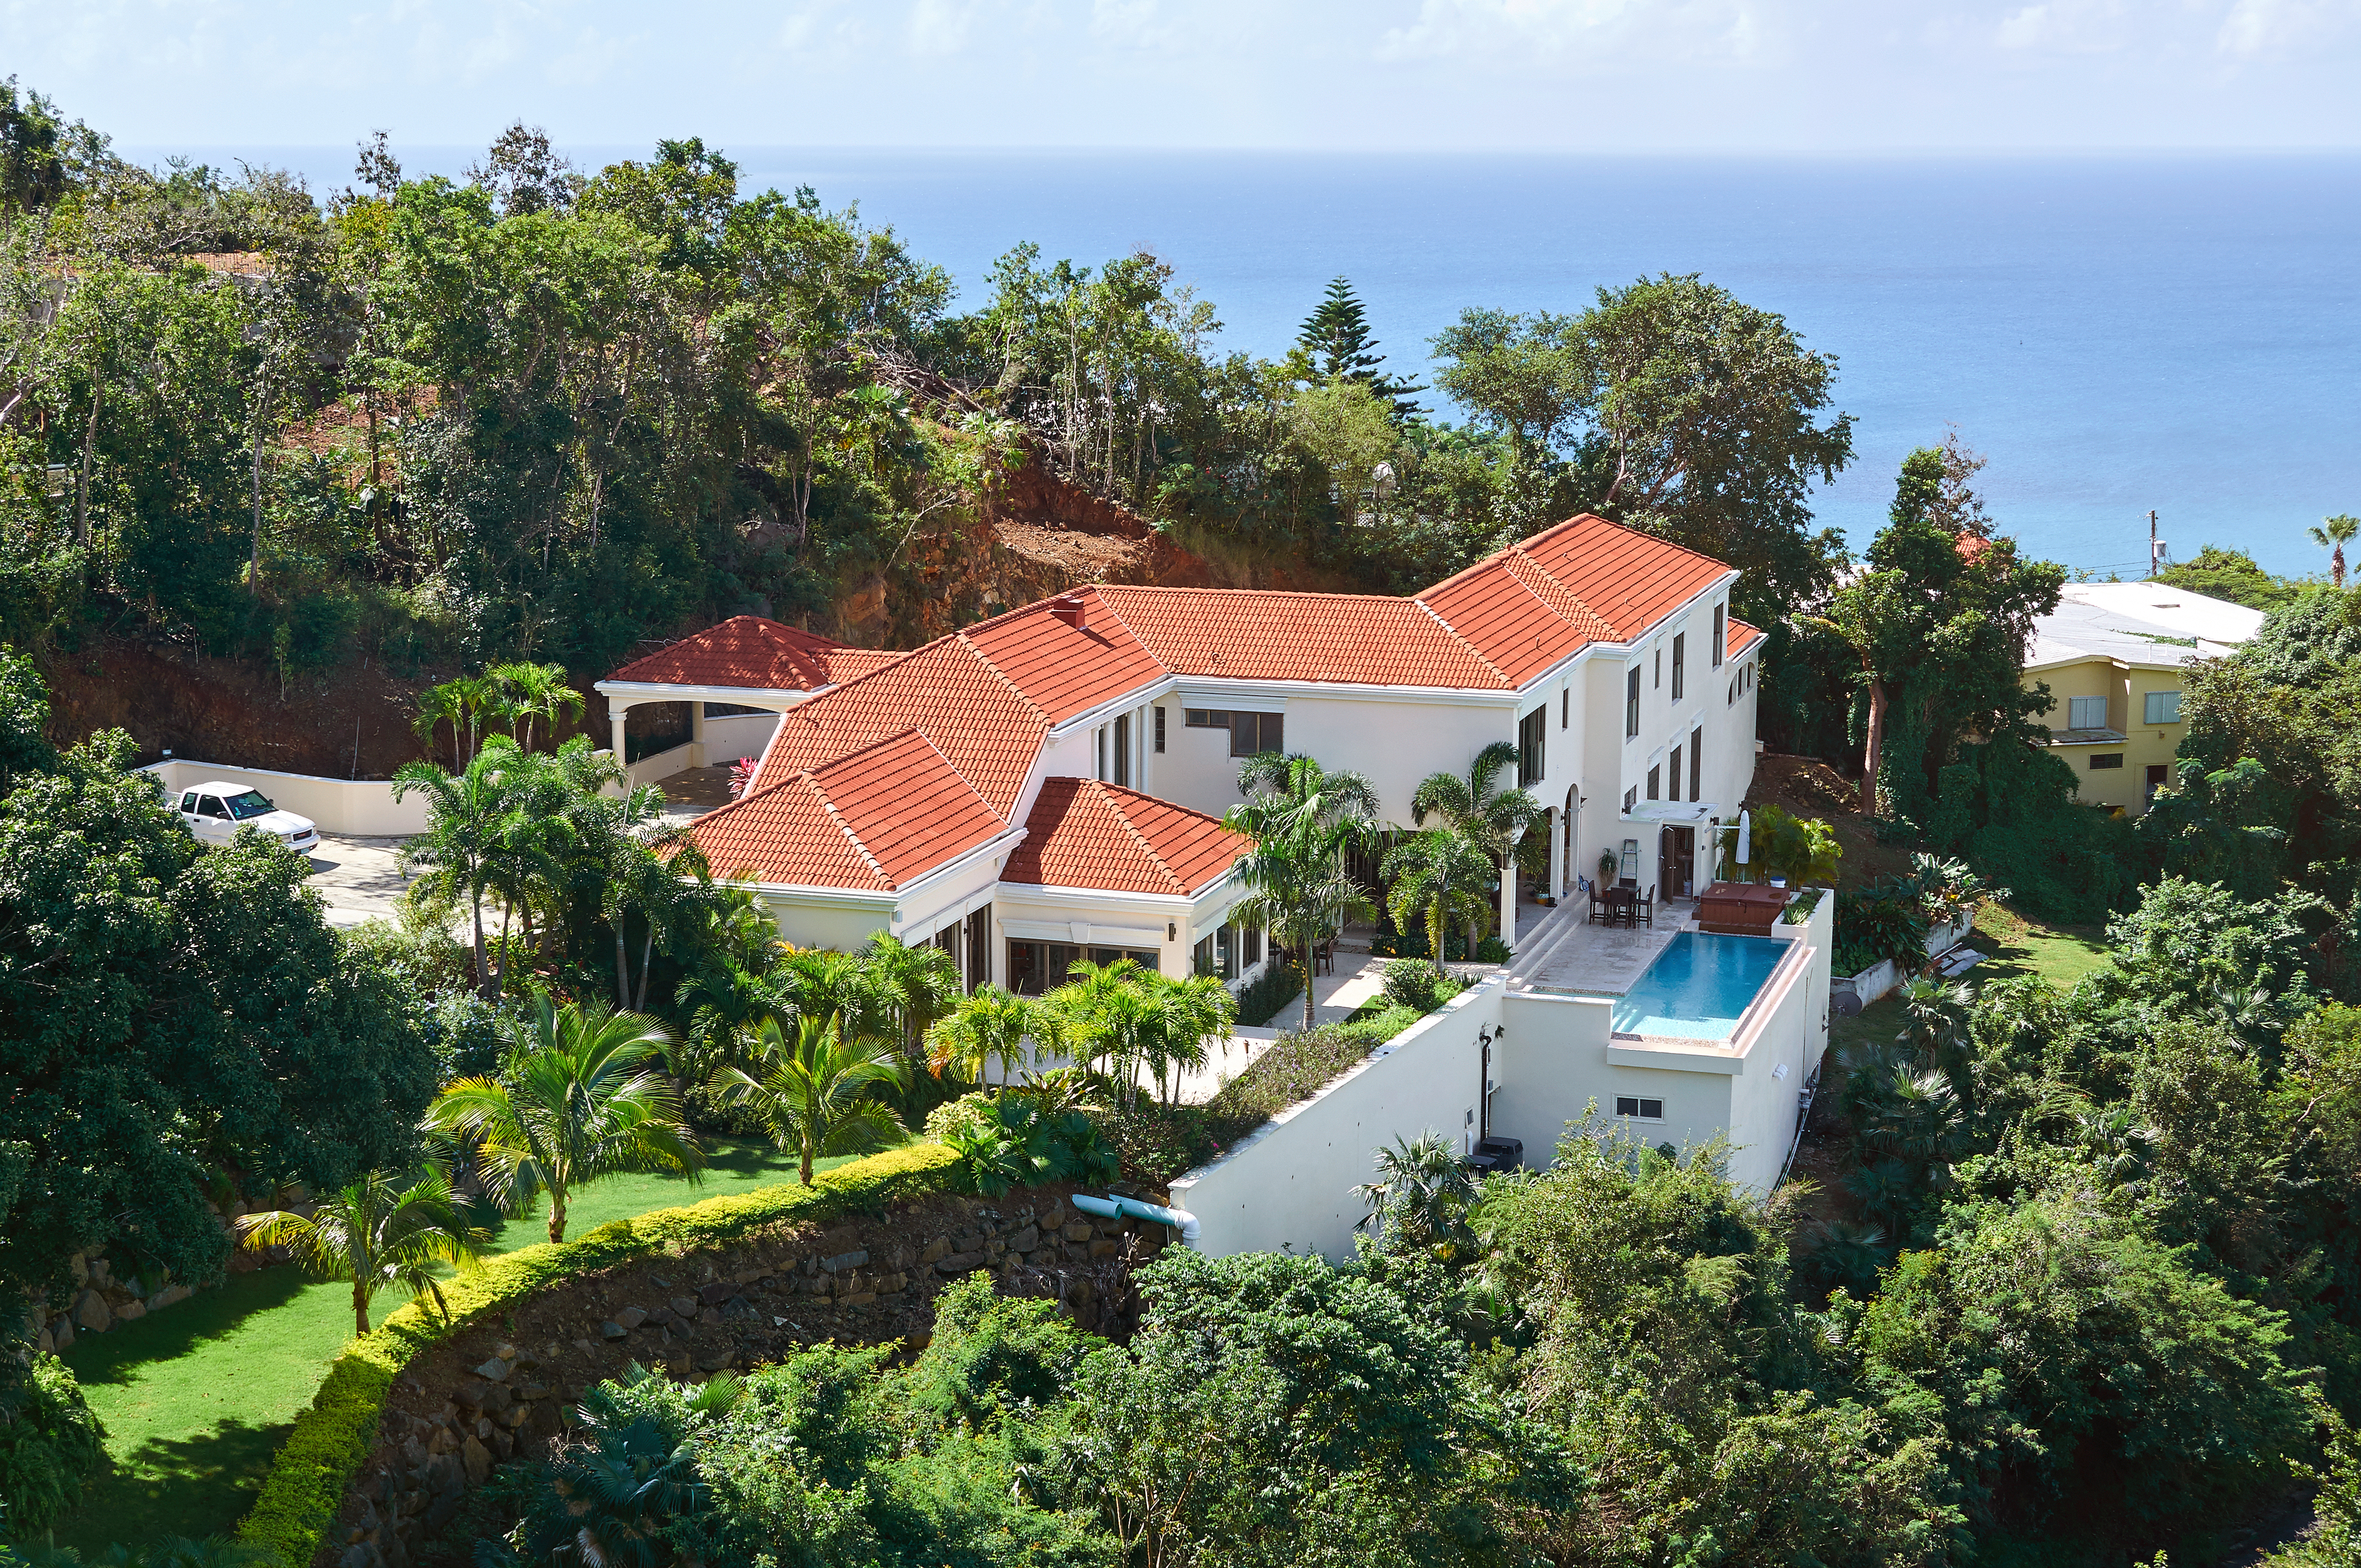 Una mansión junto a la costa | Foto: Shutterstock